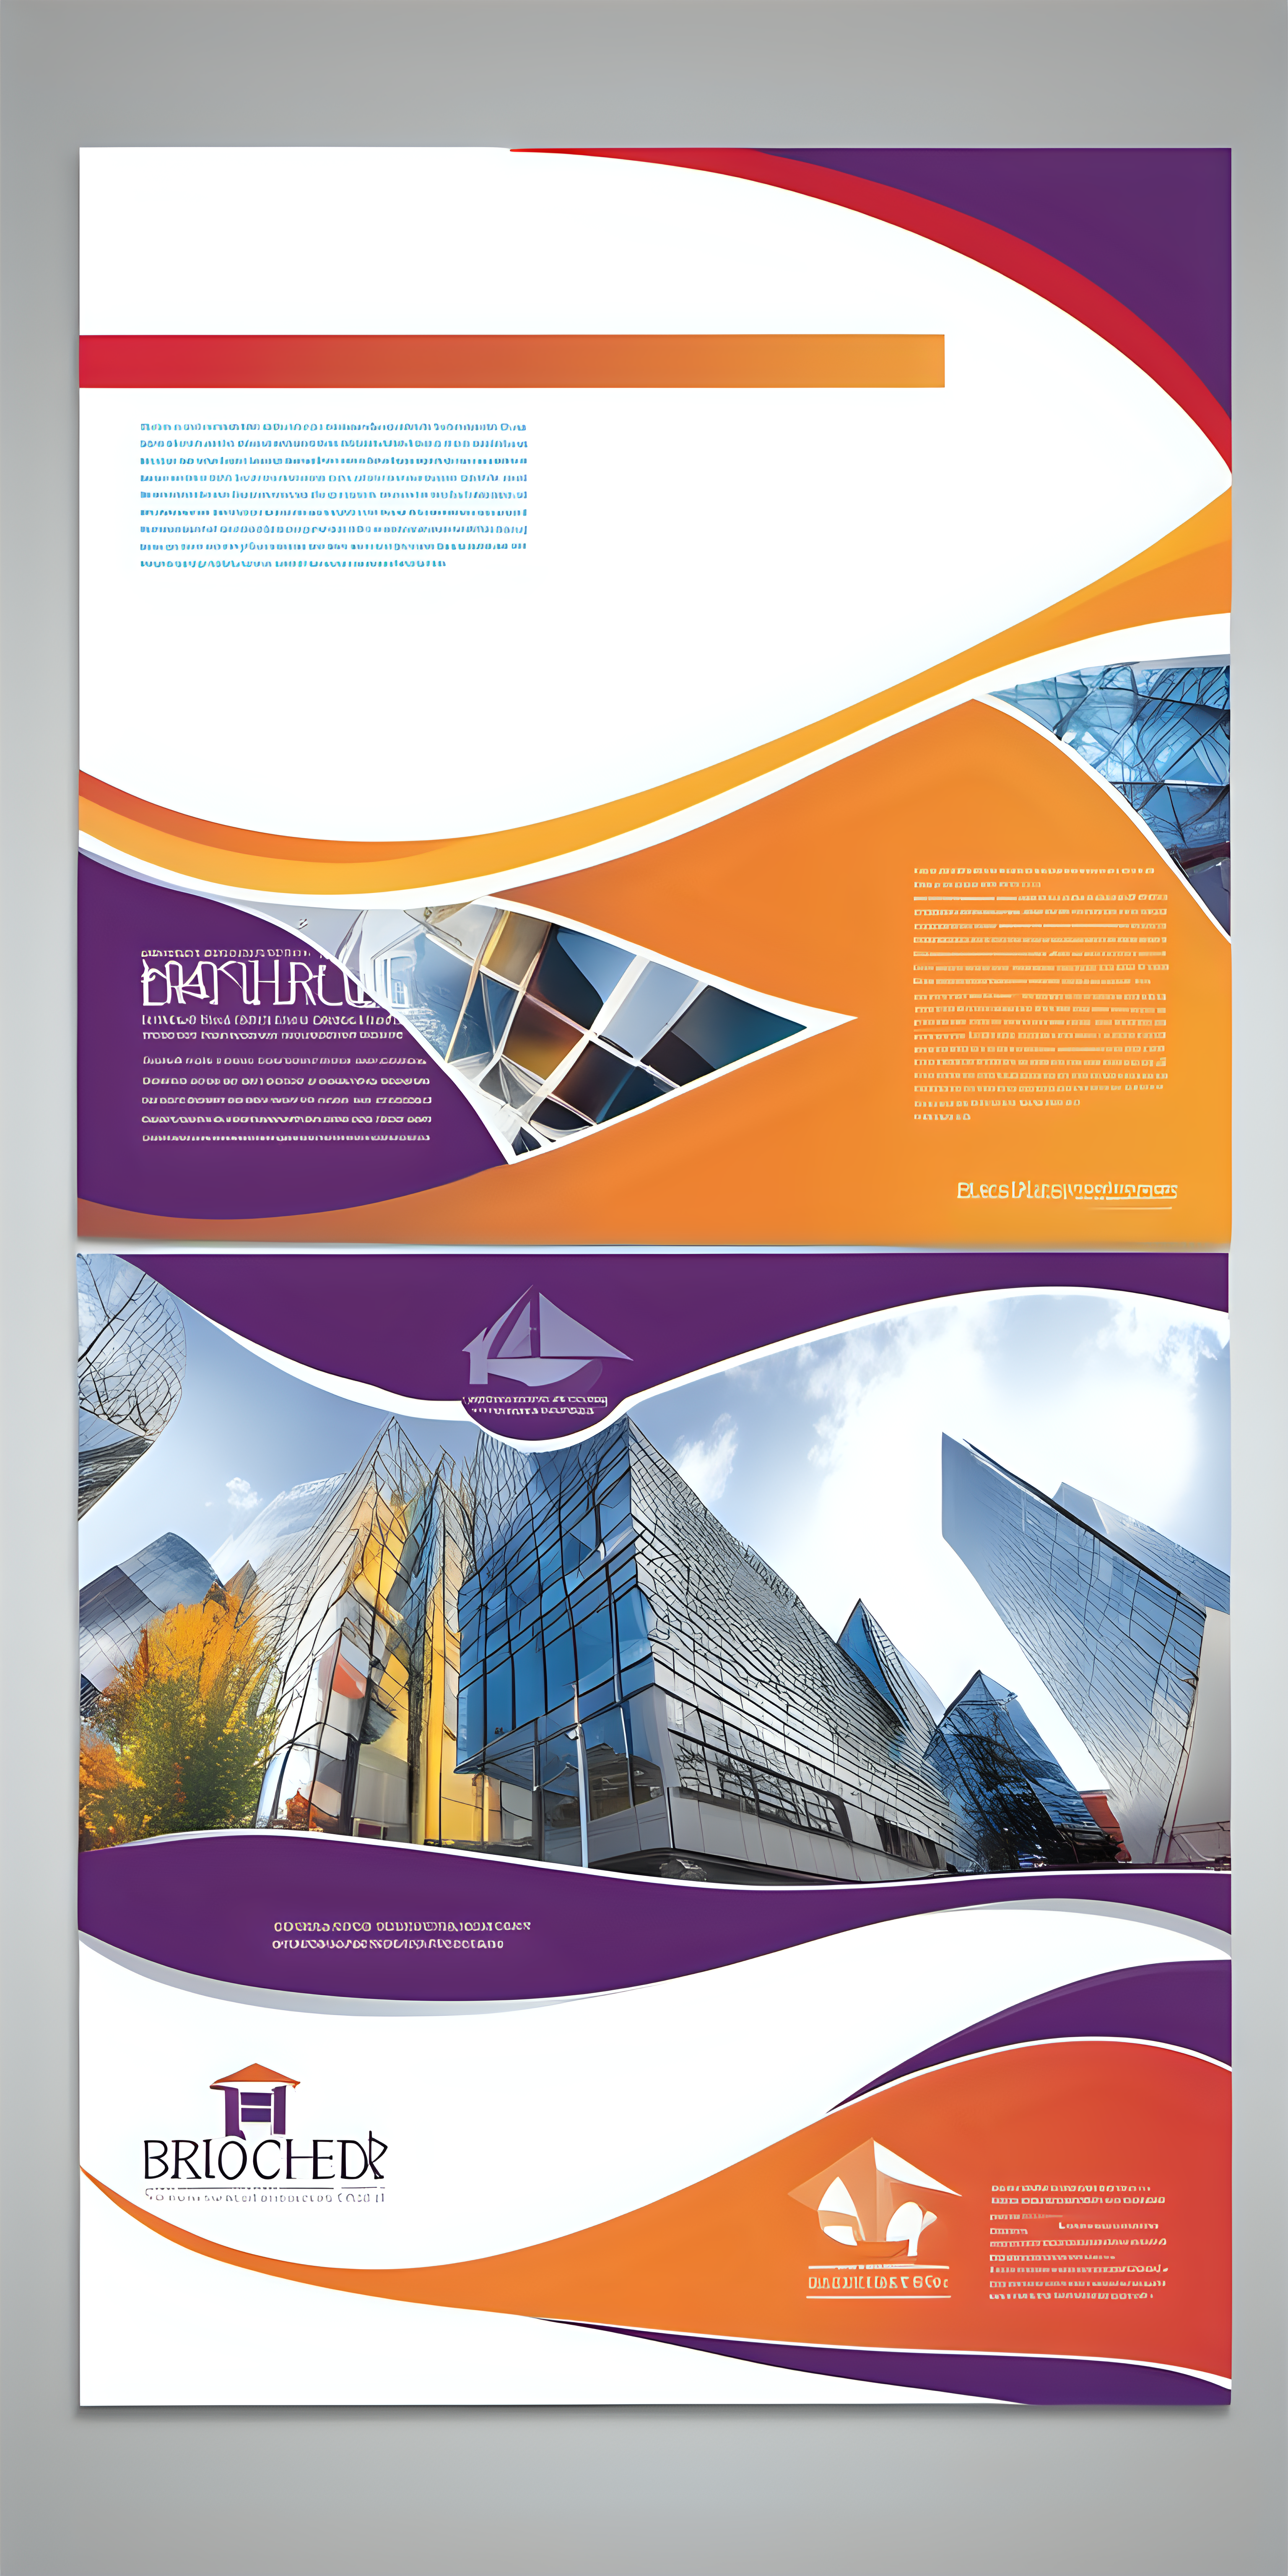   教育行业画册封面设计